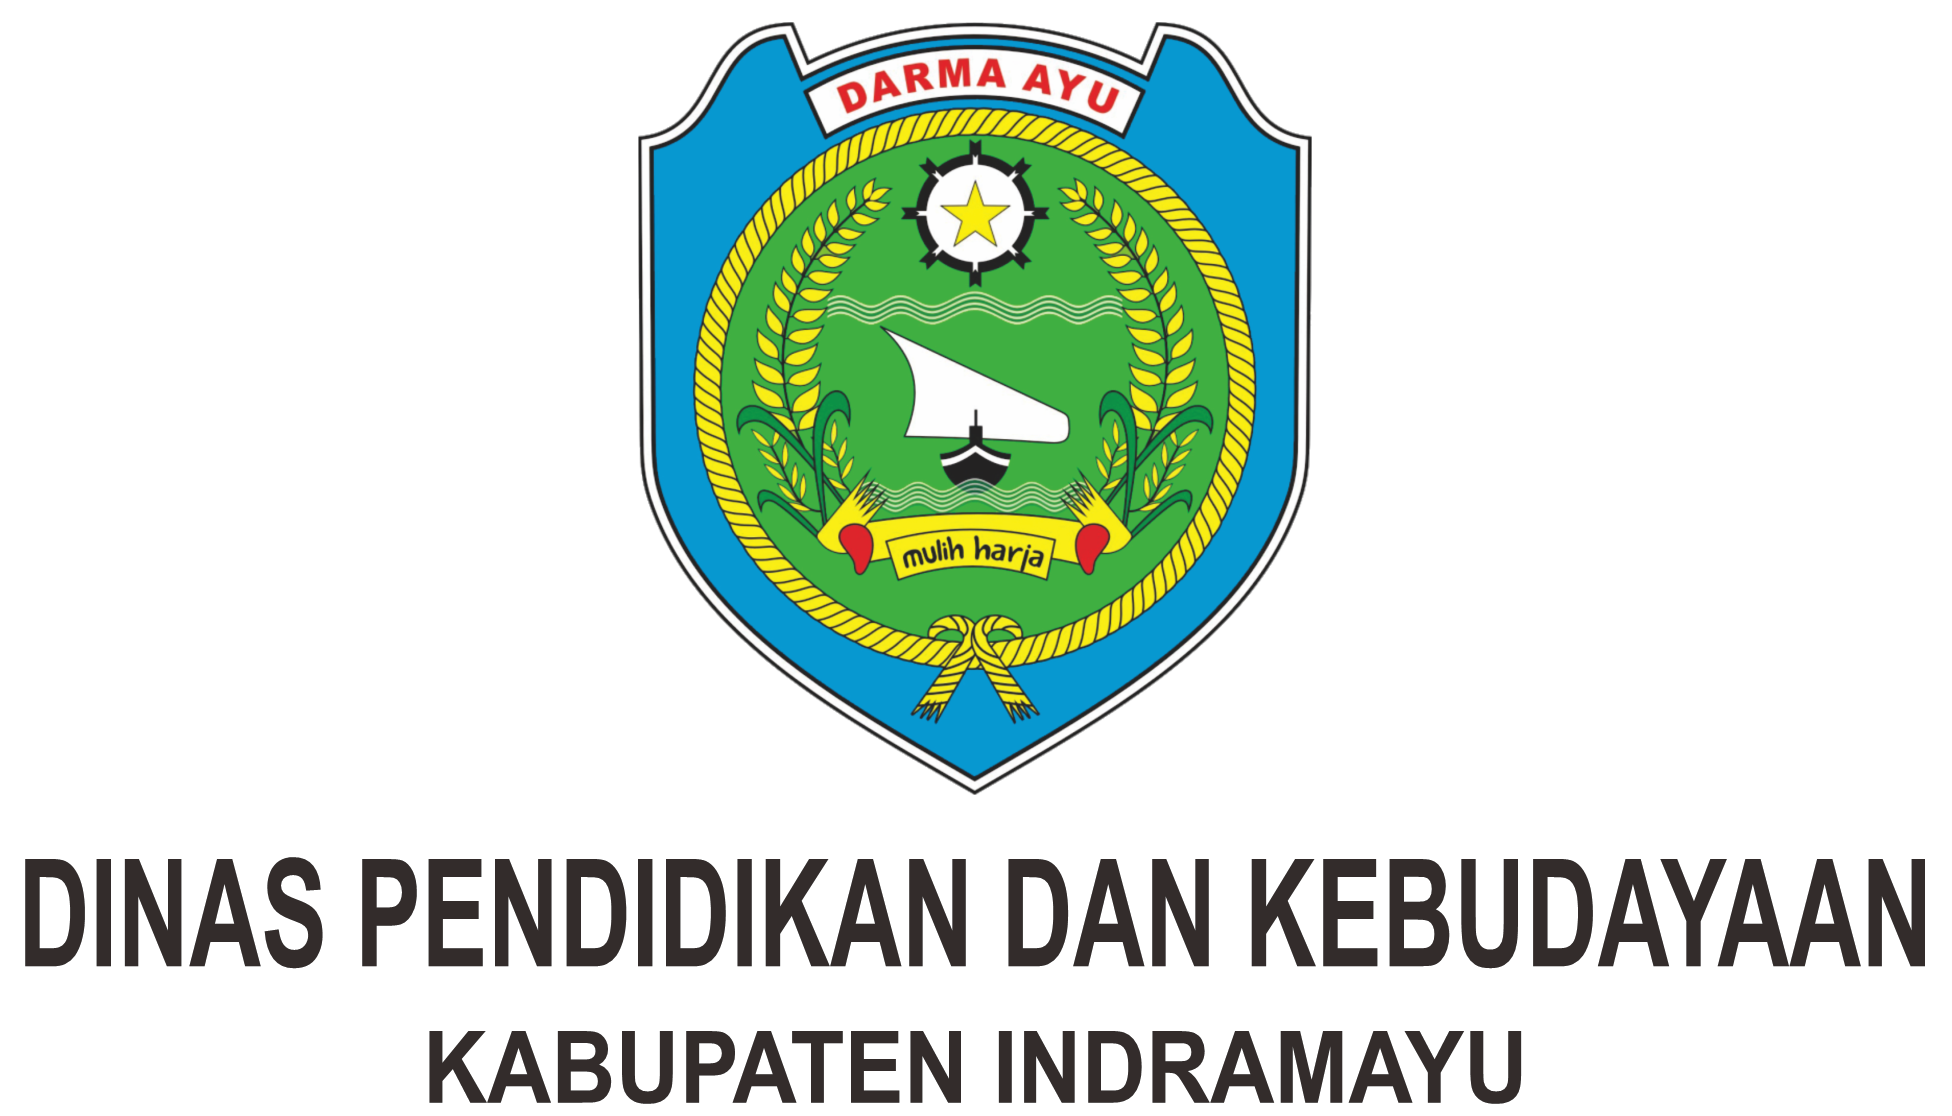 Dinas Pendidikan dan Kebudayaan Kabupaten Indramayu